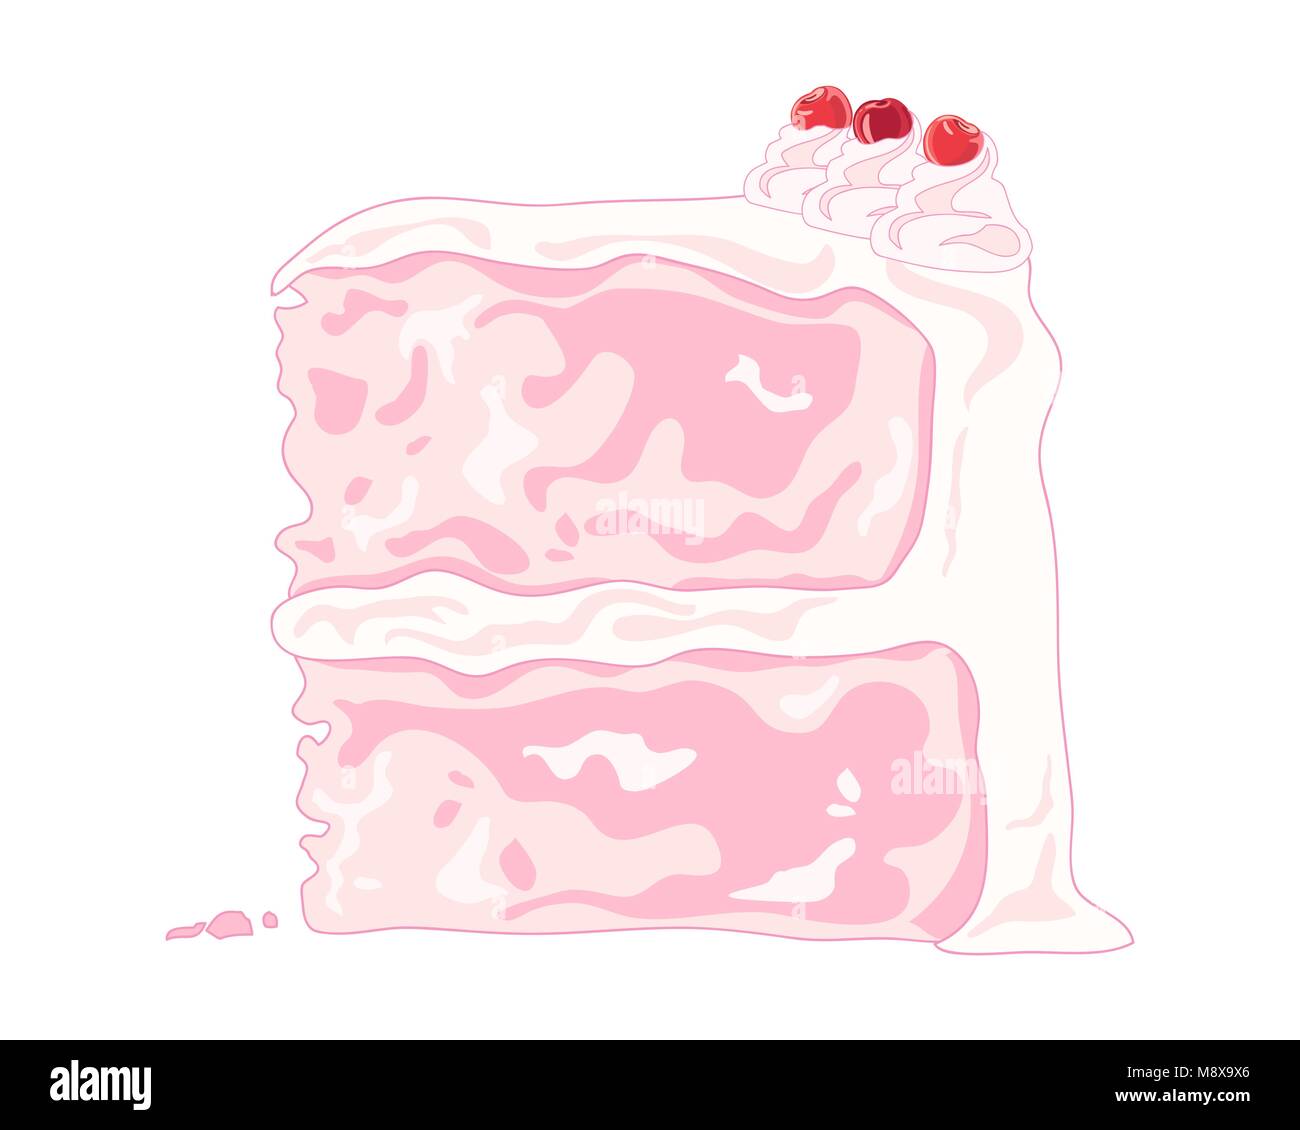 Un vecteur illustration au format eps d'une tranche de gâteau de célébration rose fantaisie avec des tourbillons de crème et de cerises sur un fond blanc Illustration de Vecteur